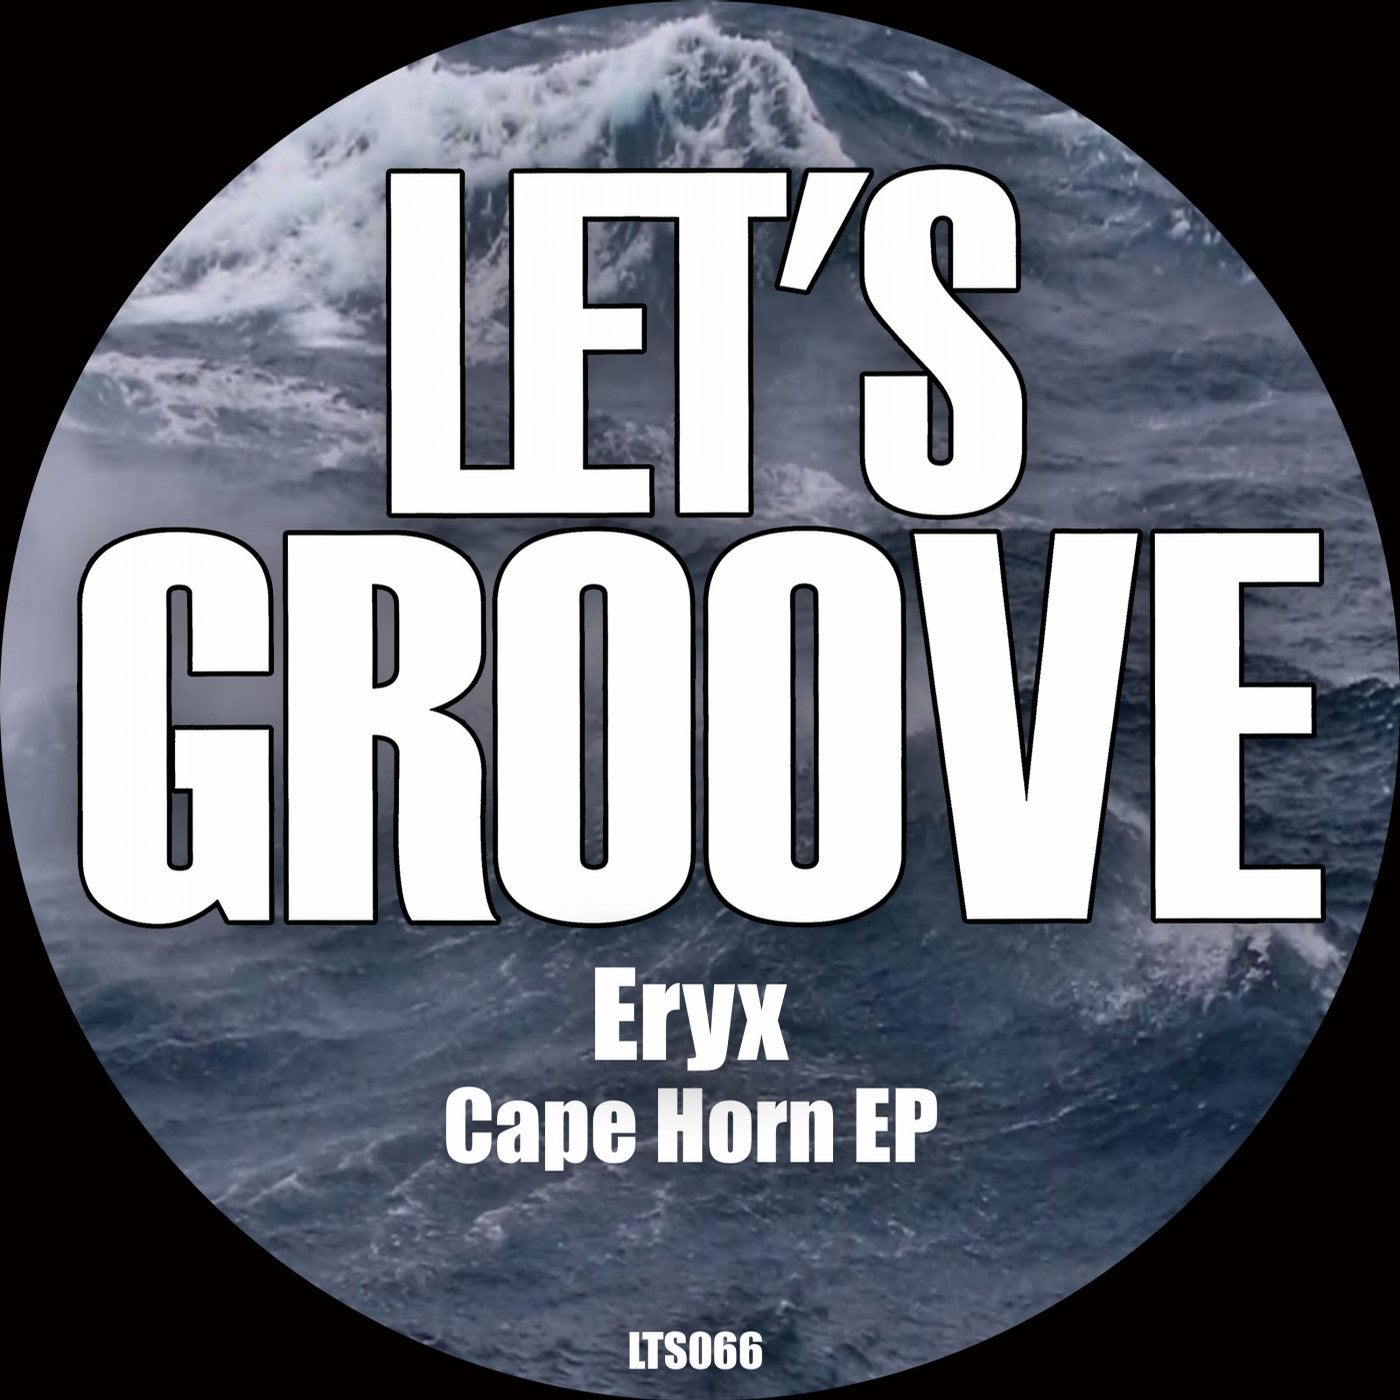 Cape Horn EP